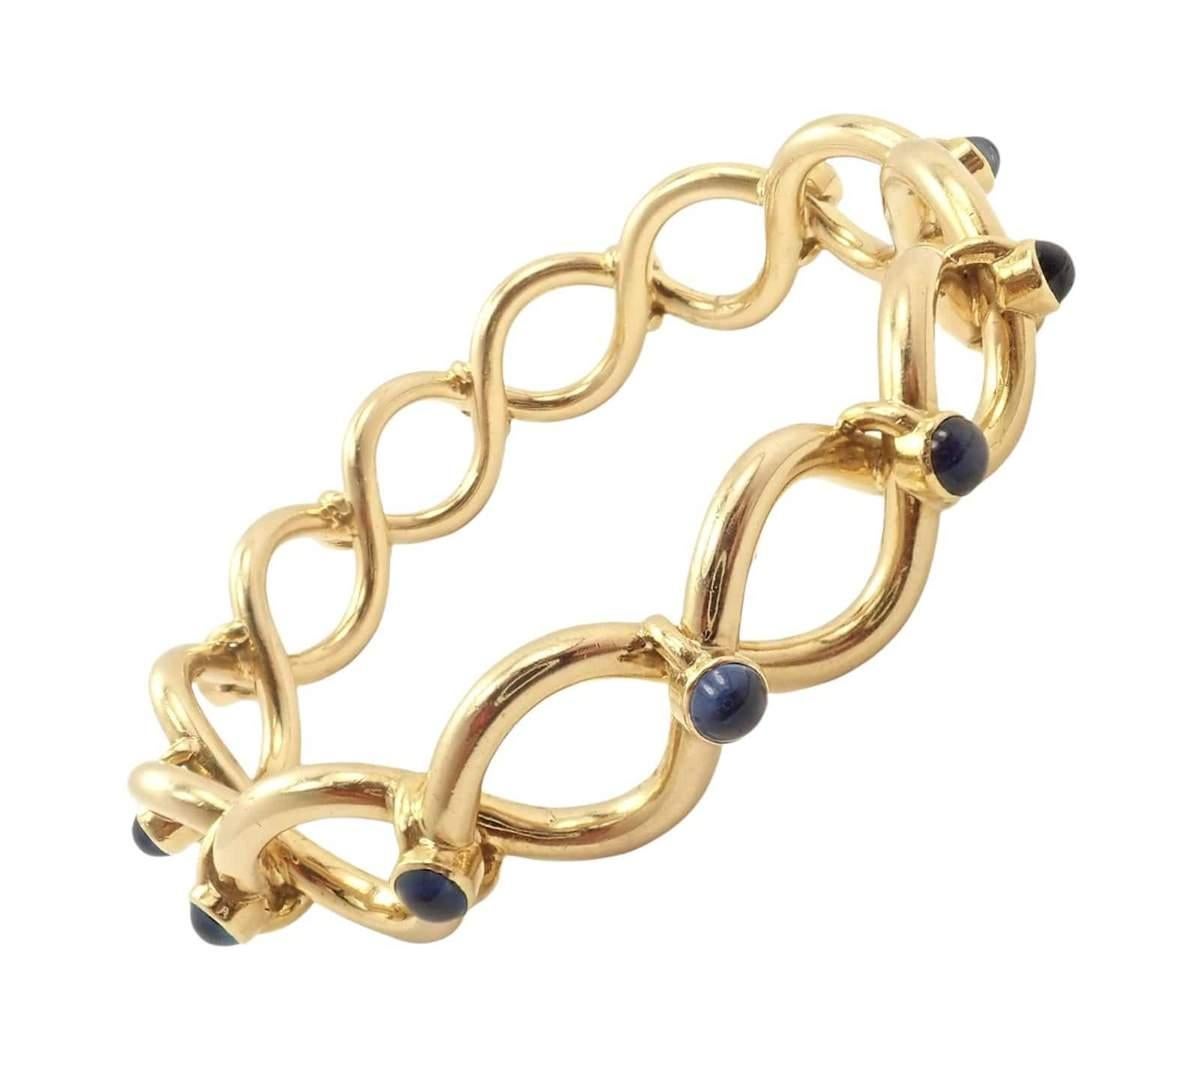 Voici un bracelet rare et vintage de Tiffany & Co. en or jaune 18k avec des saphirs bleus. 
Ce bracelet Tiffany a été fabriqué en France.
Métal : Or jaune 18k
Longueur : 7.25